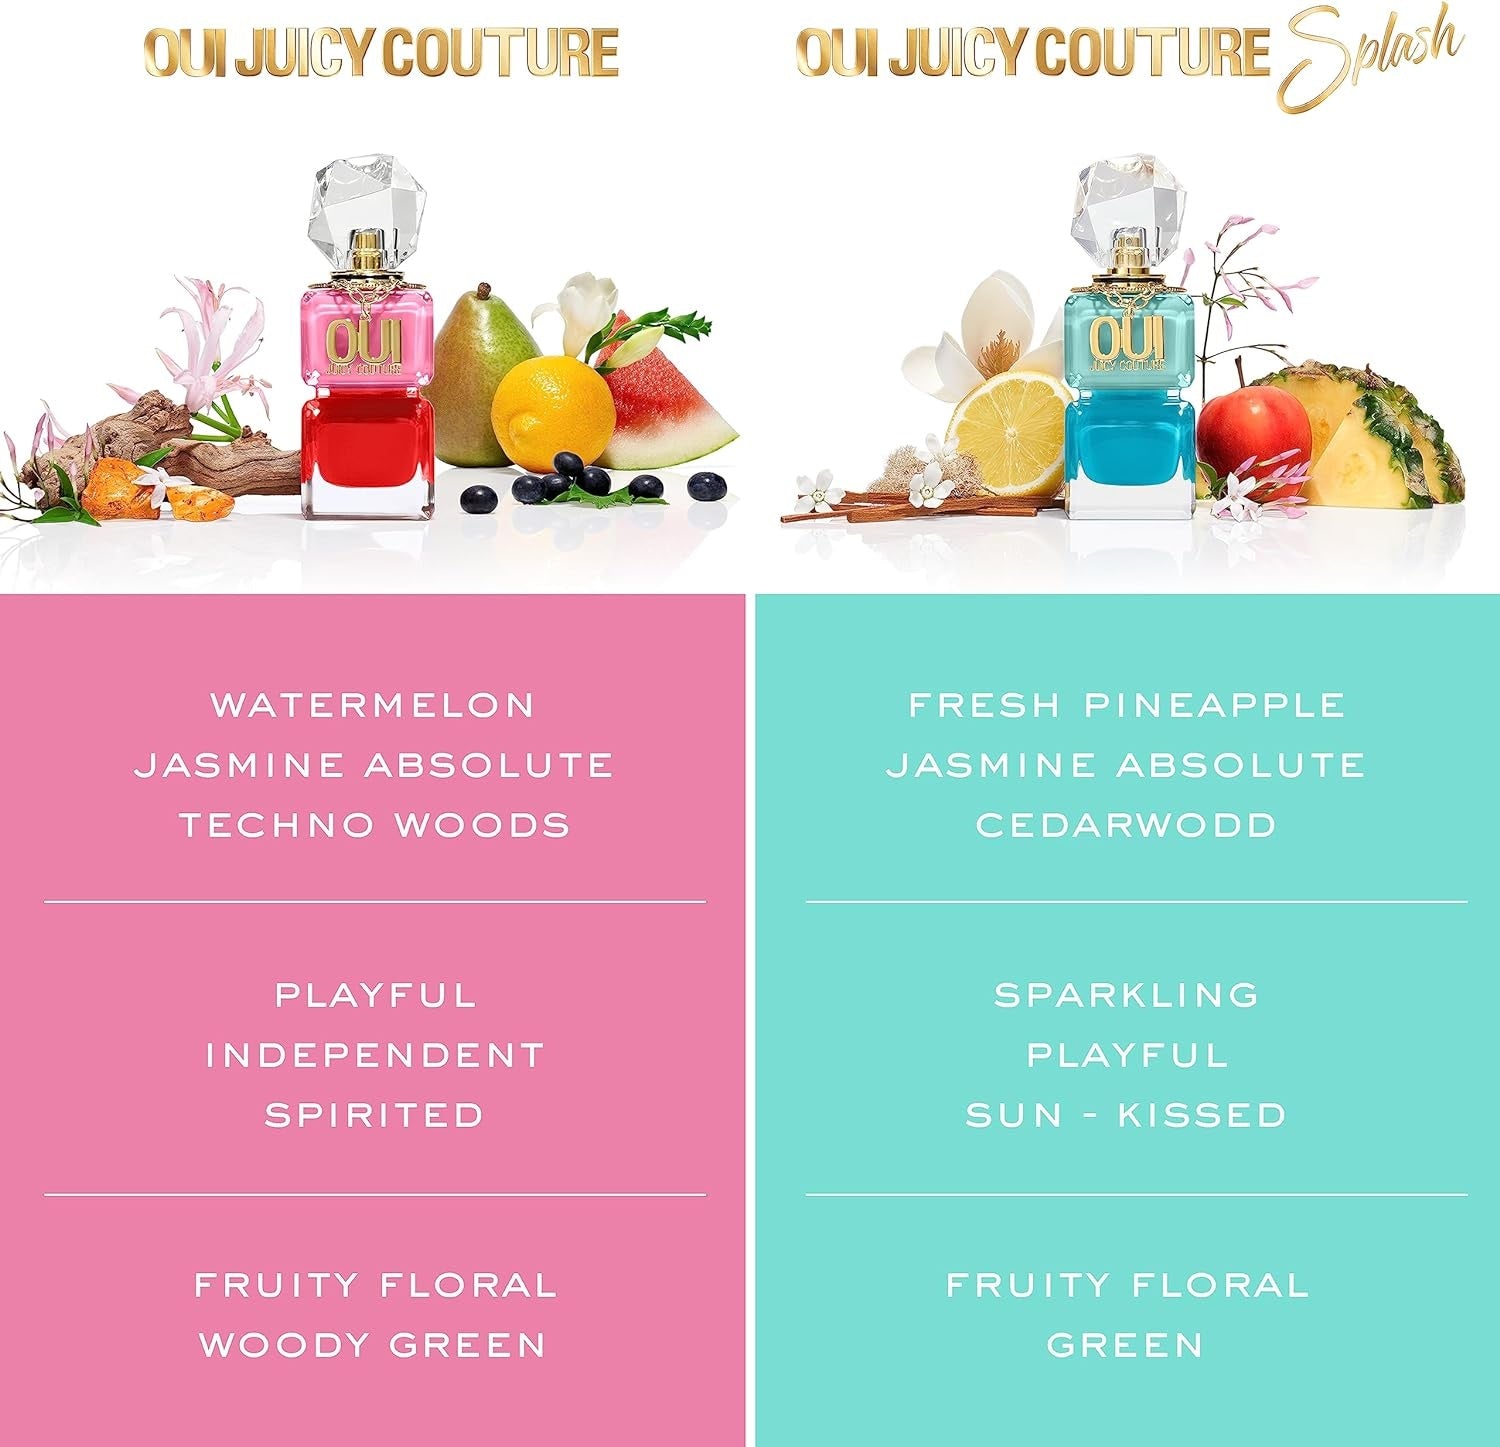 Juicy Couture Oui Eau de Parfum Spray - 50ml